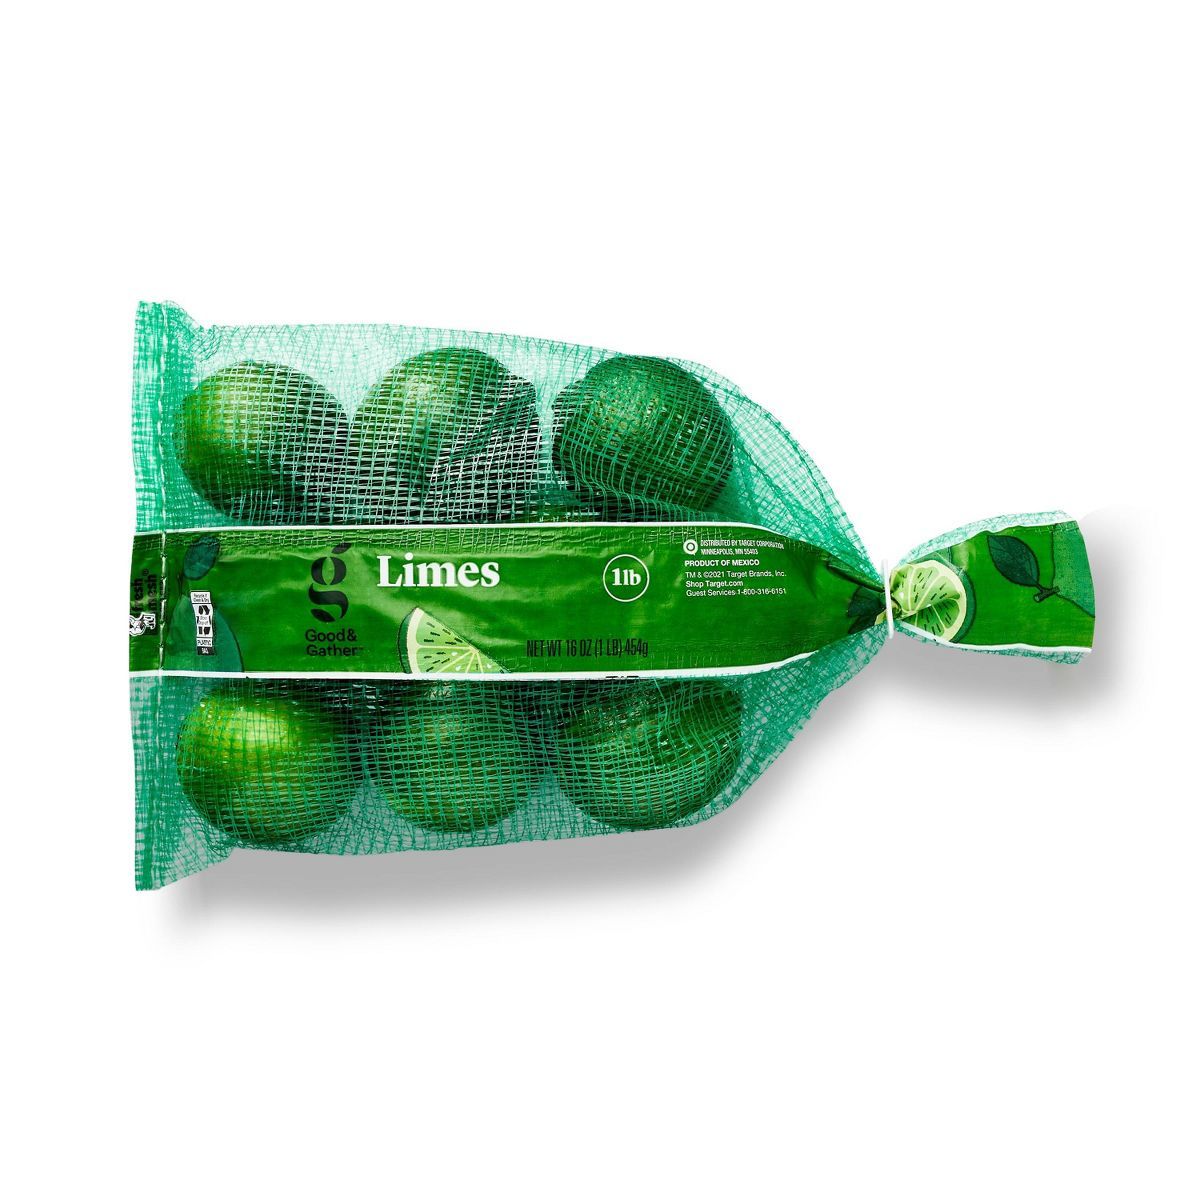 Limes - 1lb Bag - Good & Gather™ | Target